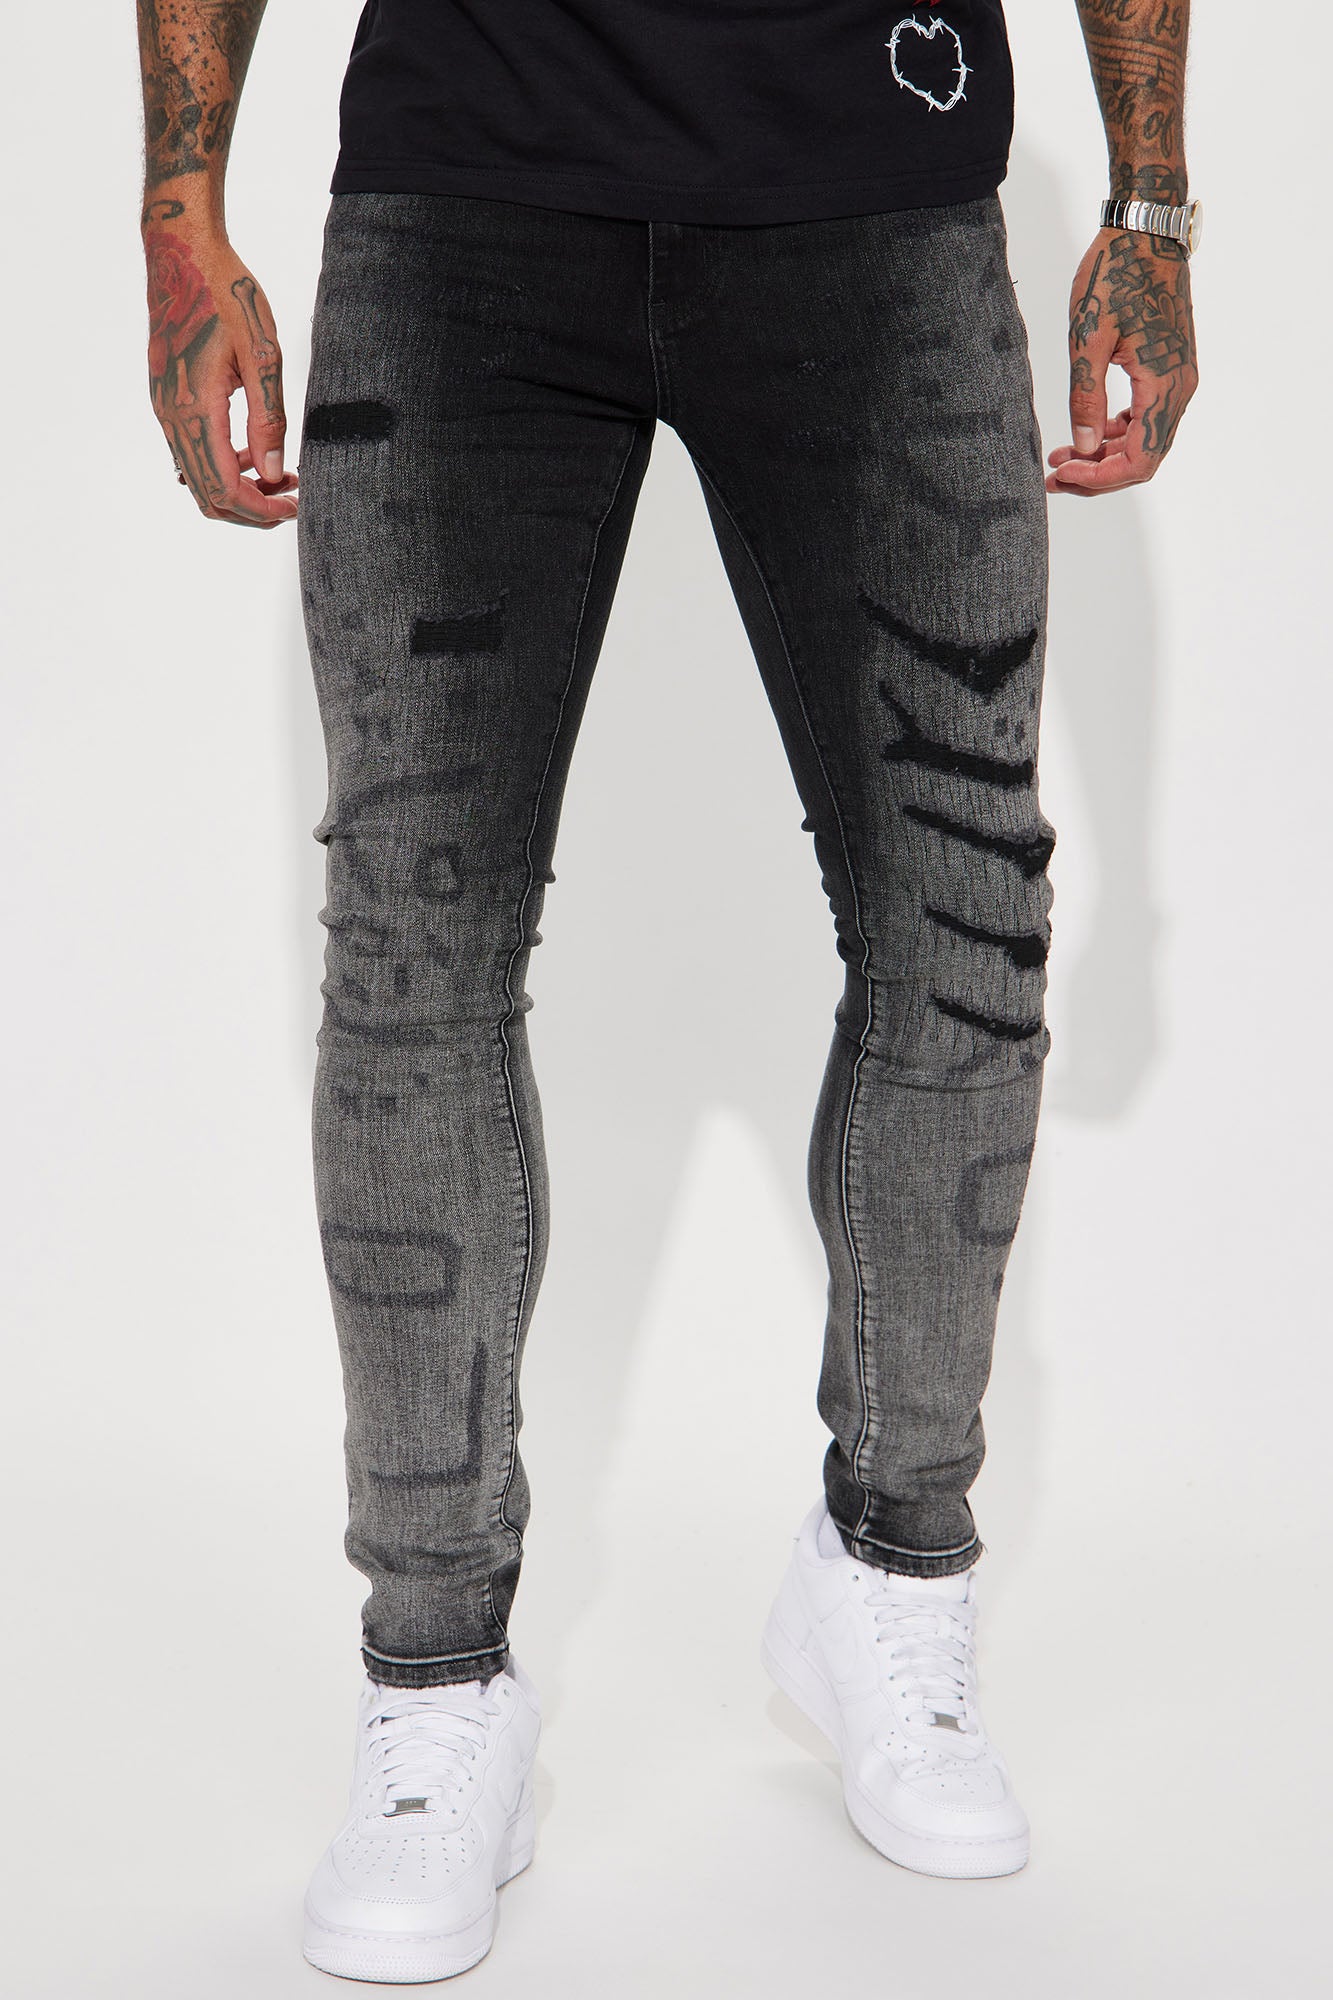 Merchandising Kip Optimisme Stitch On Me Stacked Skinny Jeans - Black Wash | Fashion Nova, Mens Jeans |  Fashion Nova